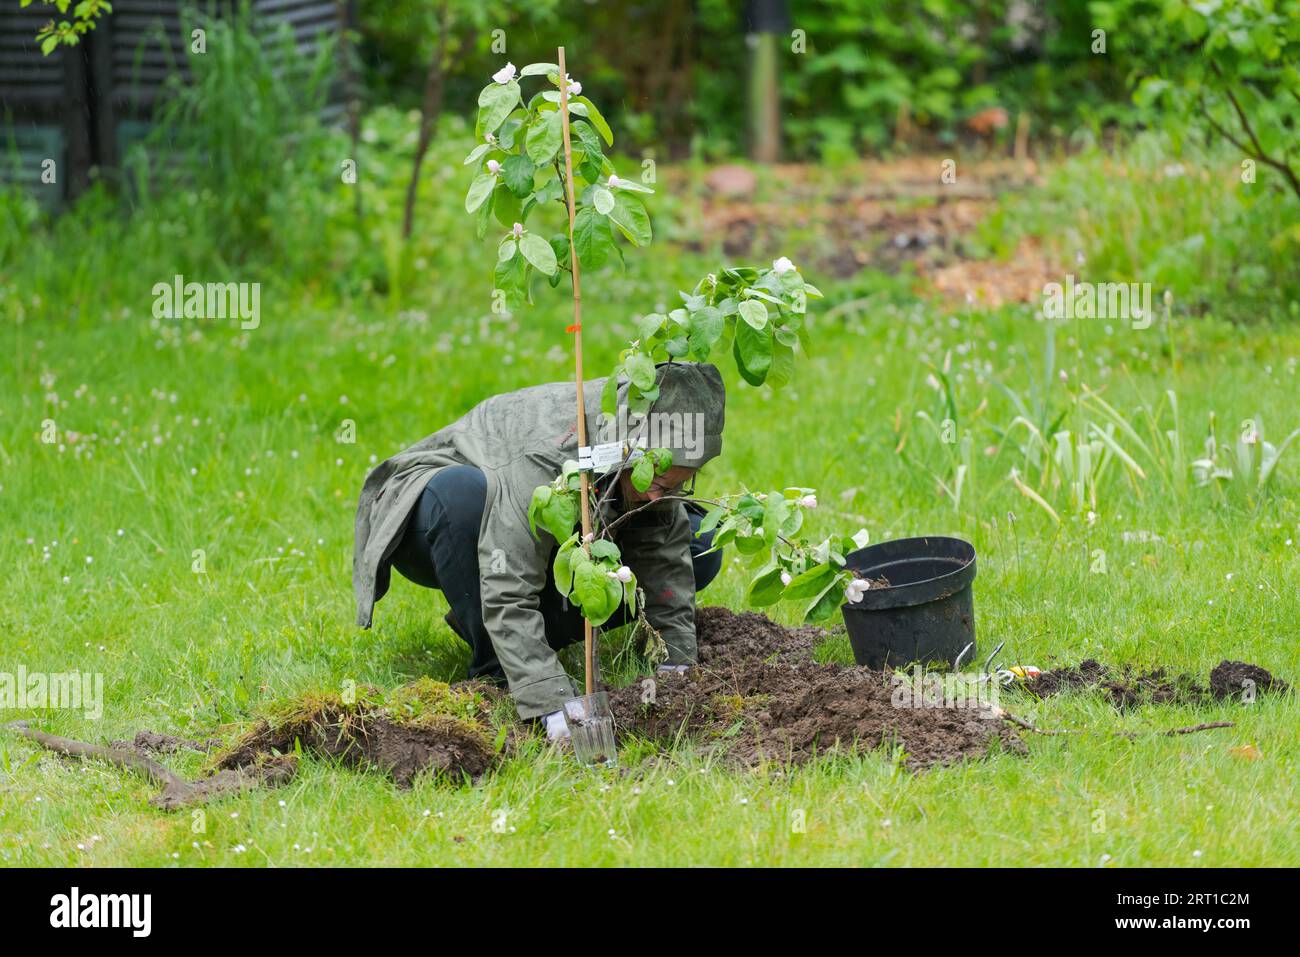 Eine Person im Garten, die während des Regens einen kleinen Quitten-Baum inmitten des Rasens pflanzt Stockfoto